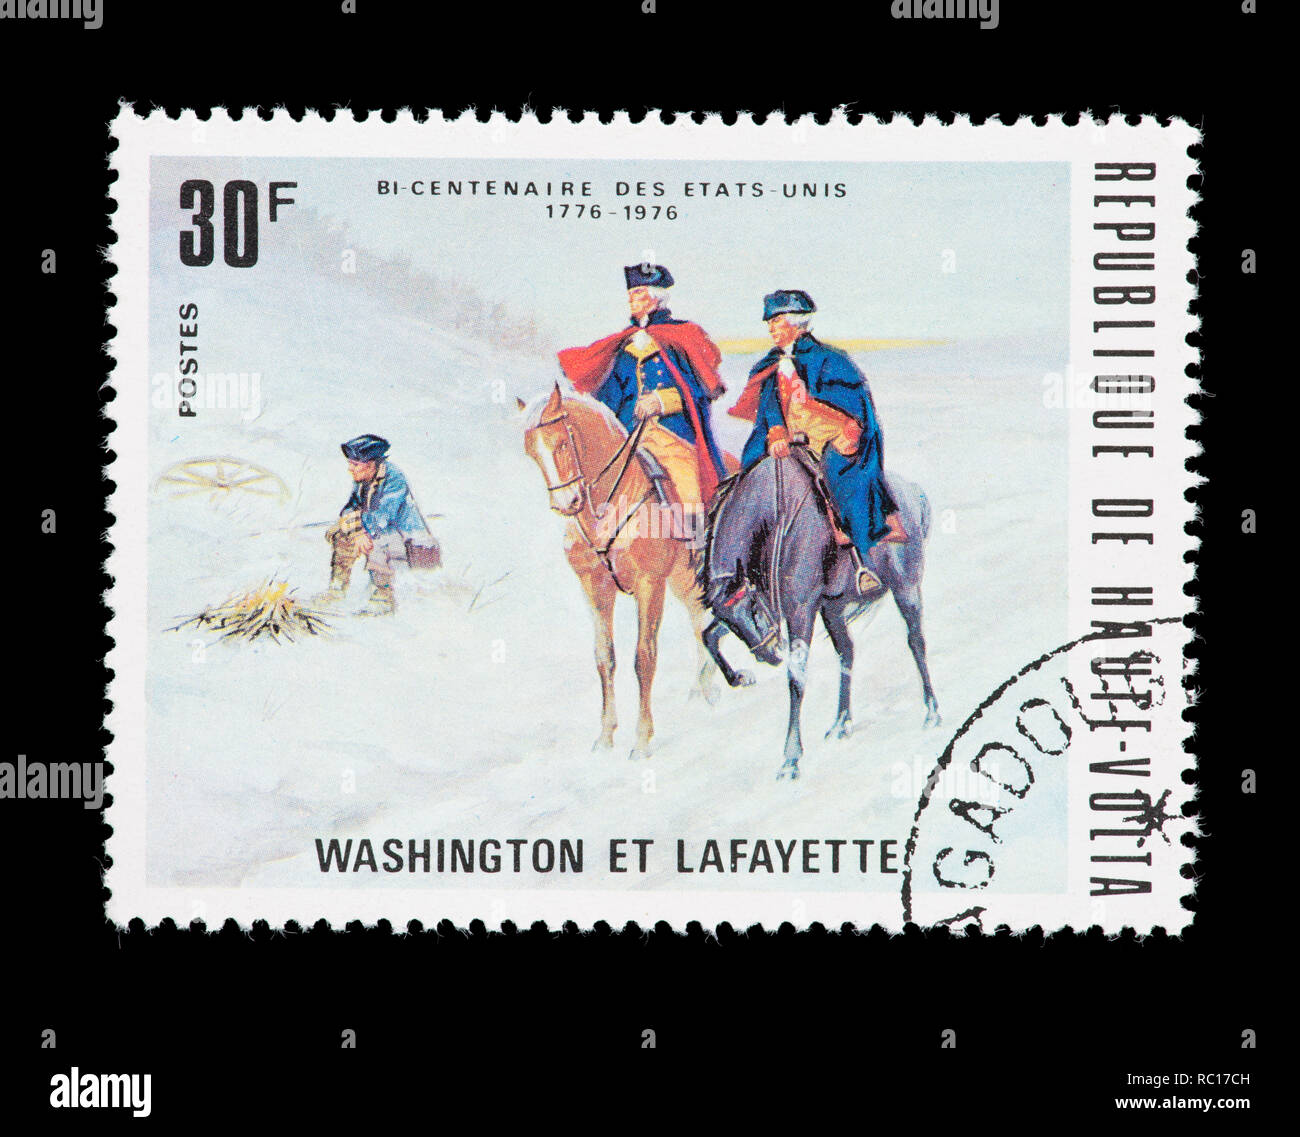 Briefmarke von Obervolta (Burkina Faso), ein Gemälde von Washington und Lafayette, USA Bicentennial. Stockfoto